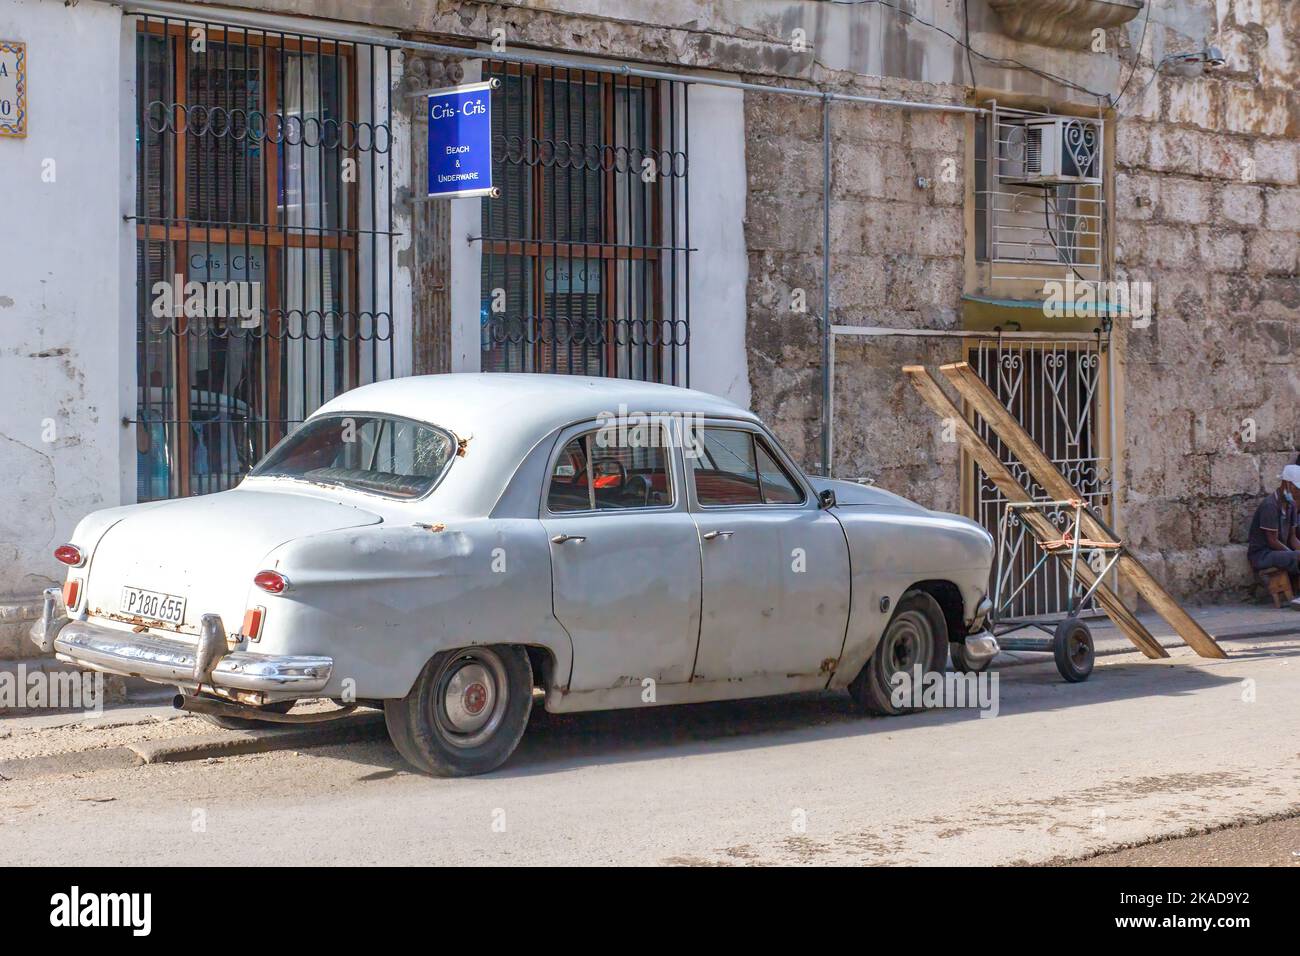 Un coche gris vintage está aparcado junto a un carro rústico. Hay un contraste arquitectónico entre un edificio viejo y otro en buen estado. Foto de stock